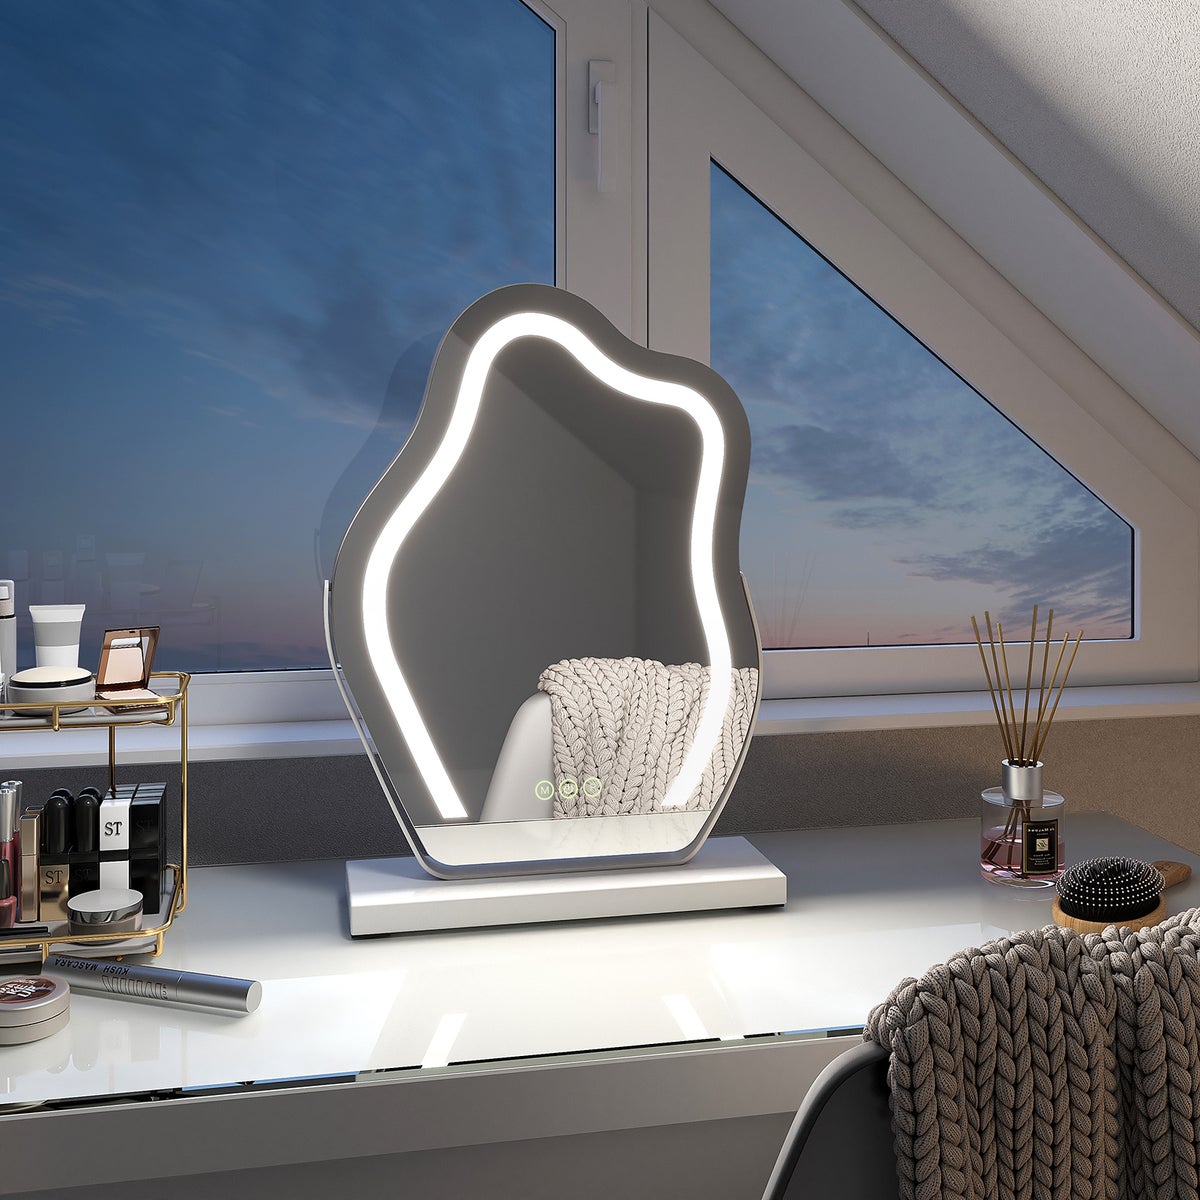 EMKE Schminkspiegel mit Beleuchtung Unregelmäßige Kurve Kosmetikspiegel 360° Drehbar, Touchschalter, 3 Lichtfarben Dimmbar und Memory-Funktion Höhe 30 cm Weiß Rahmen